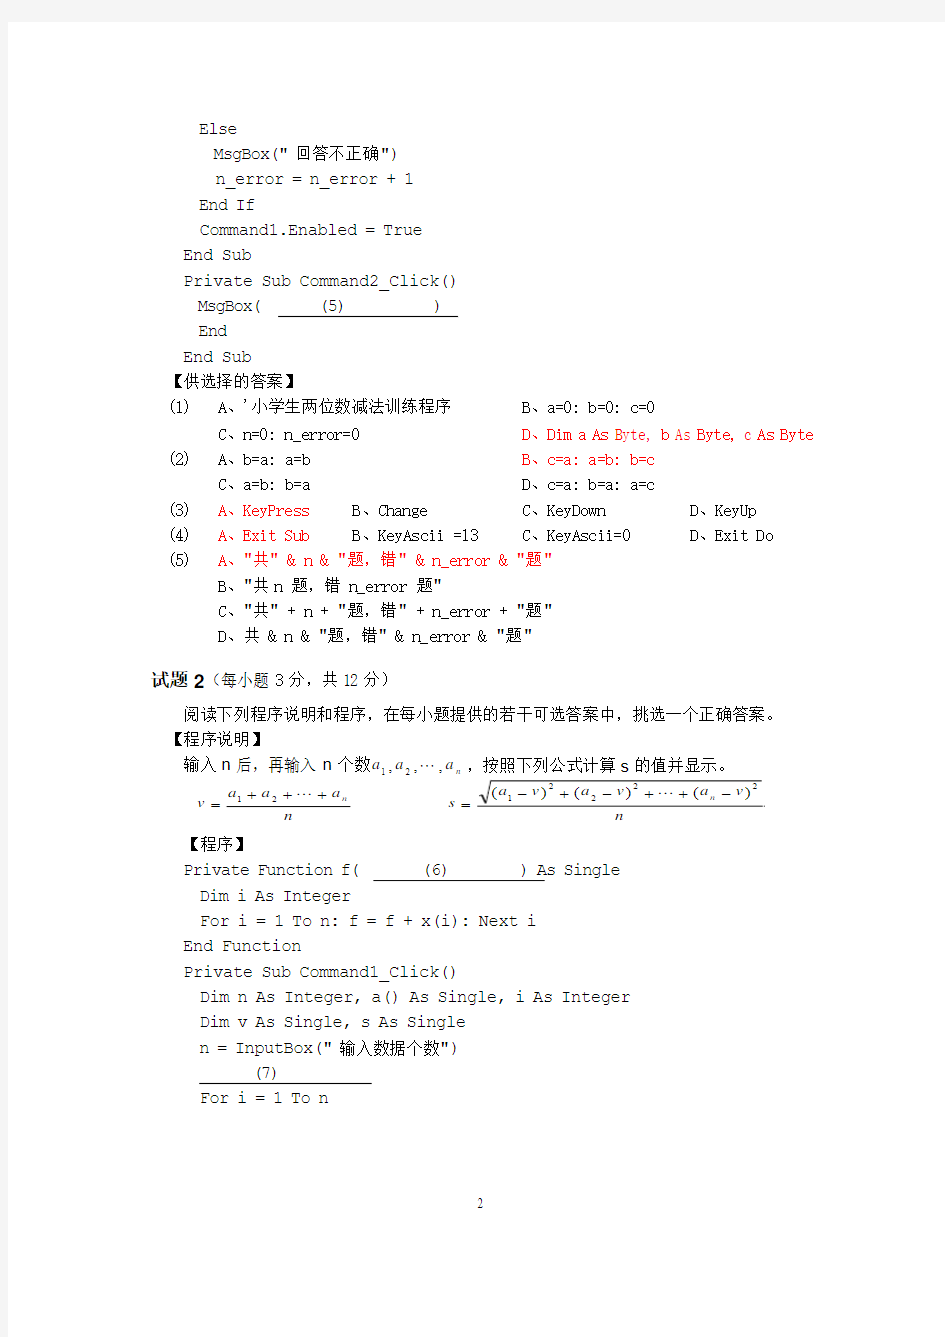 06年春浙江省高校计算机VB二级等级考试真题试卷(含答案)